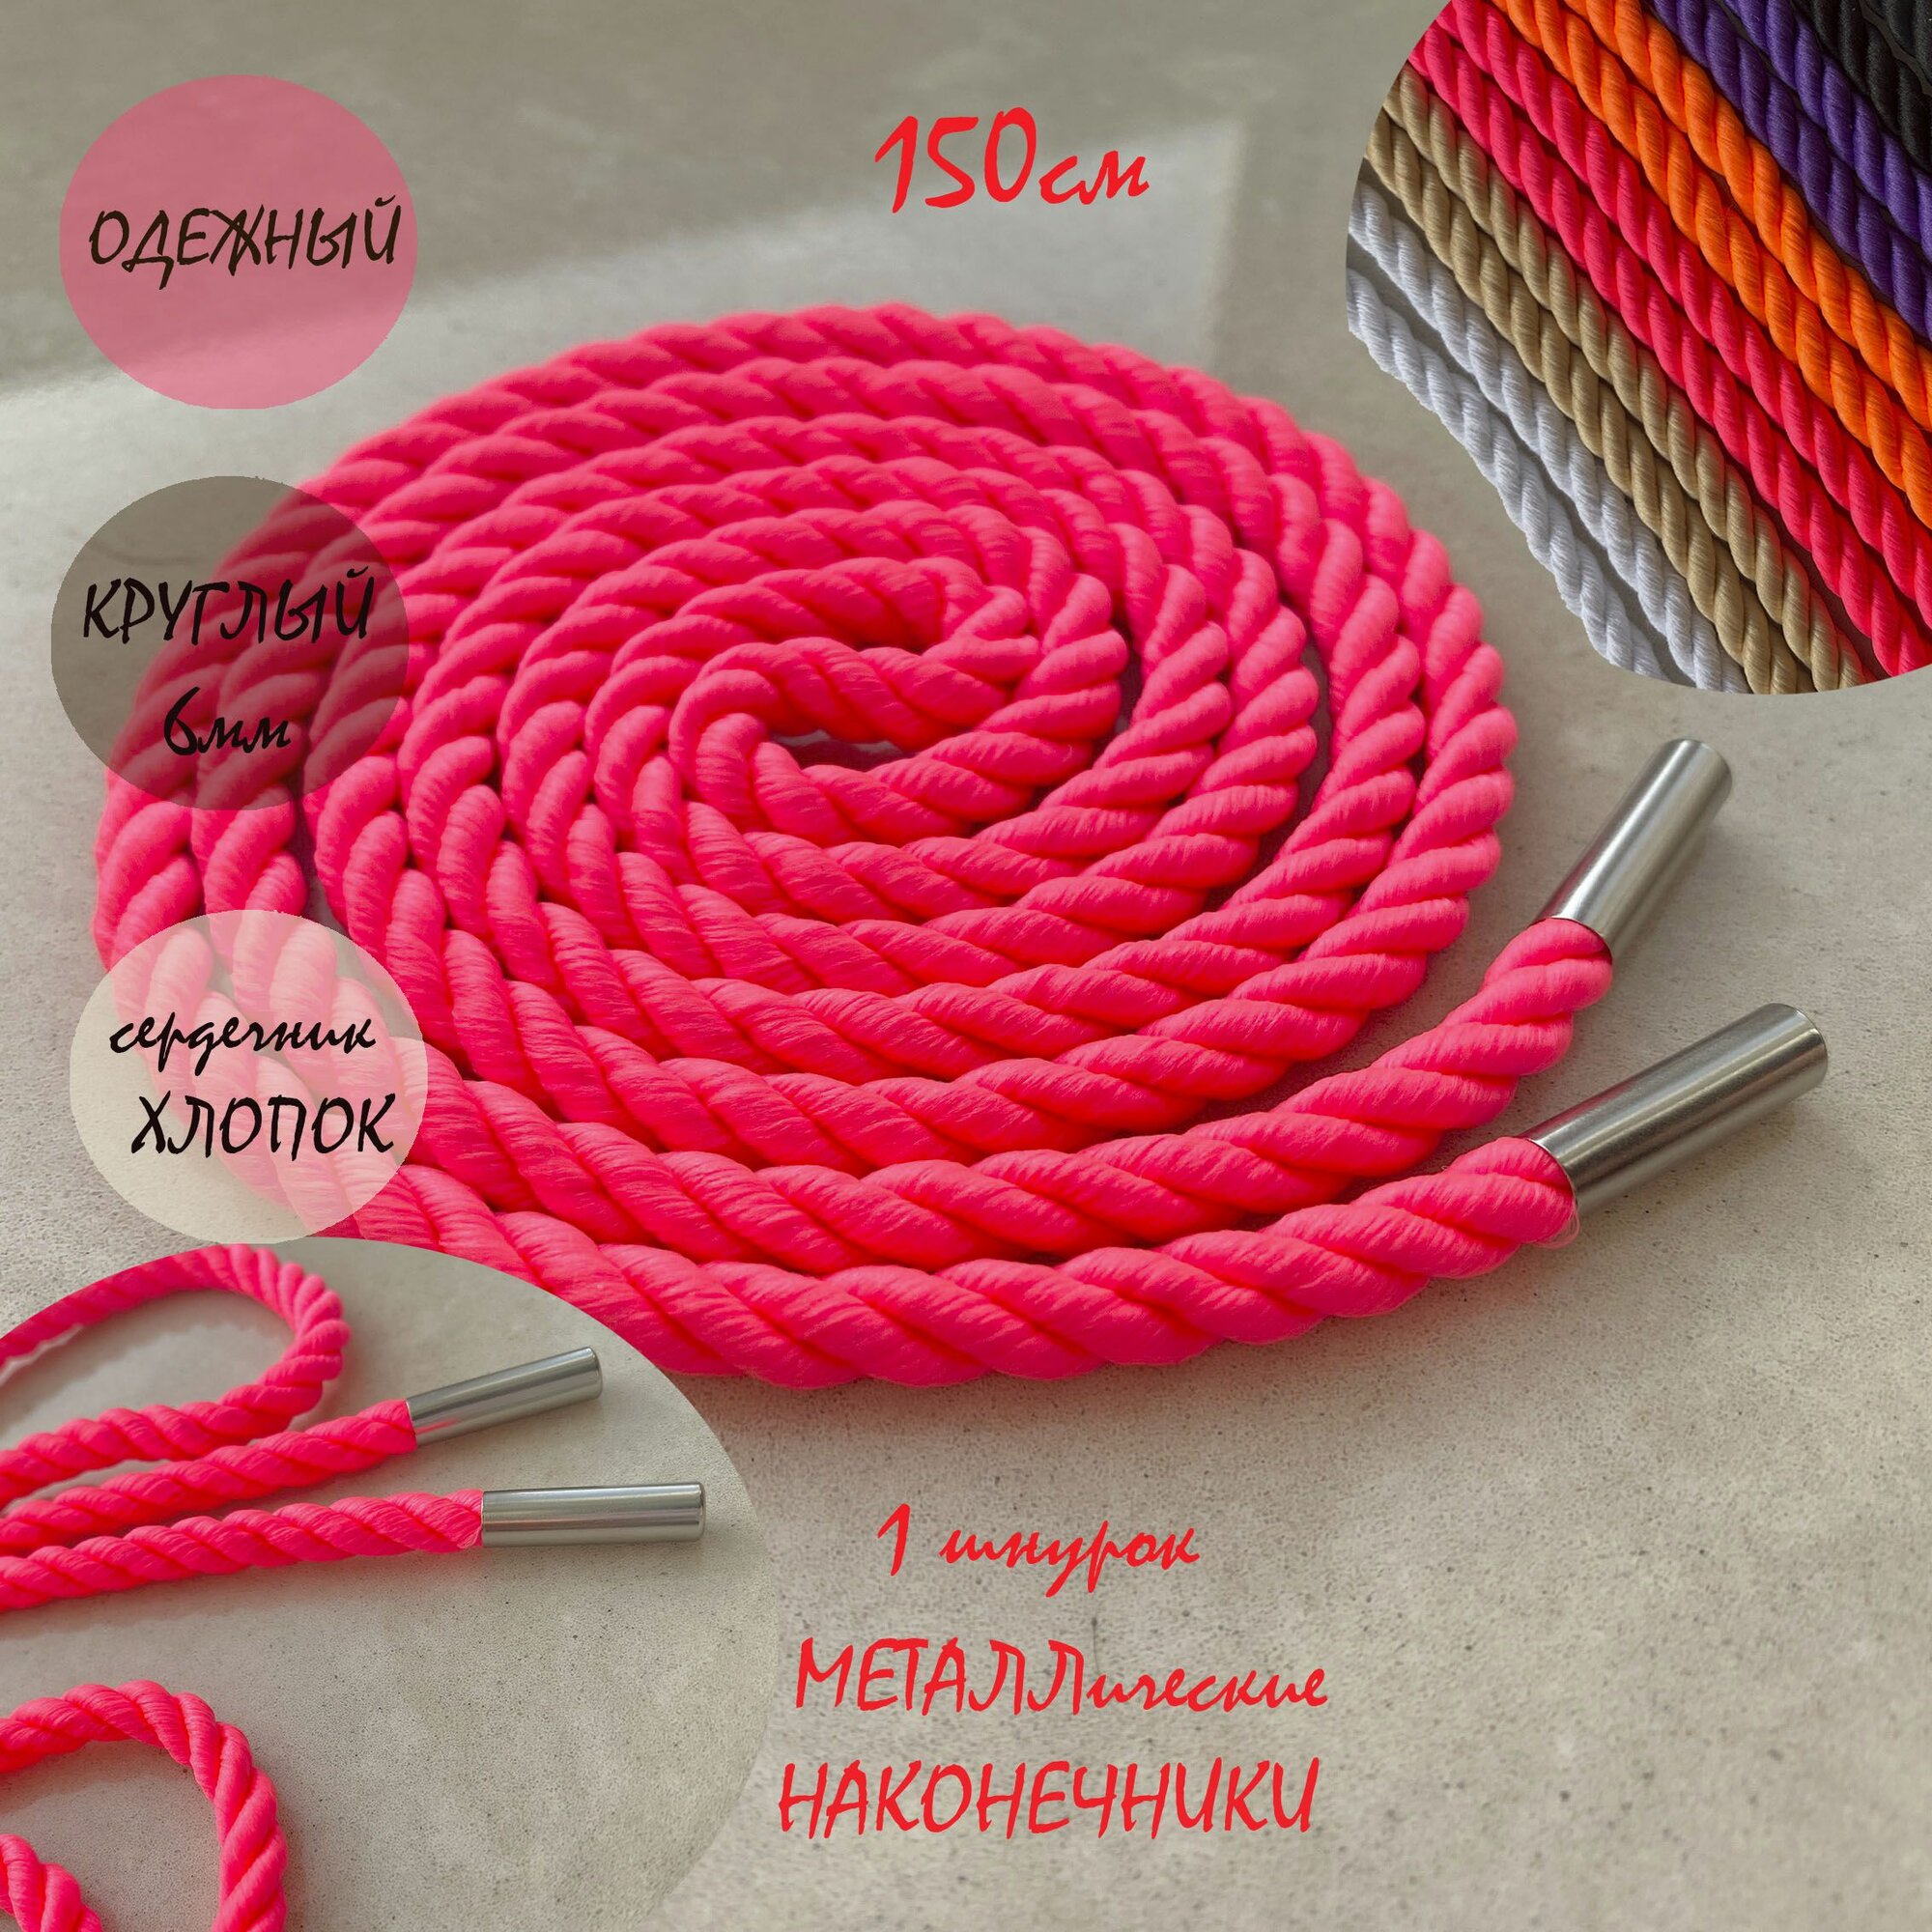 Шнур одежный 150см розовый неон 6мм веревка с металл наконечниками (1 штука) для одежды / худи / капюшона